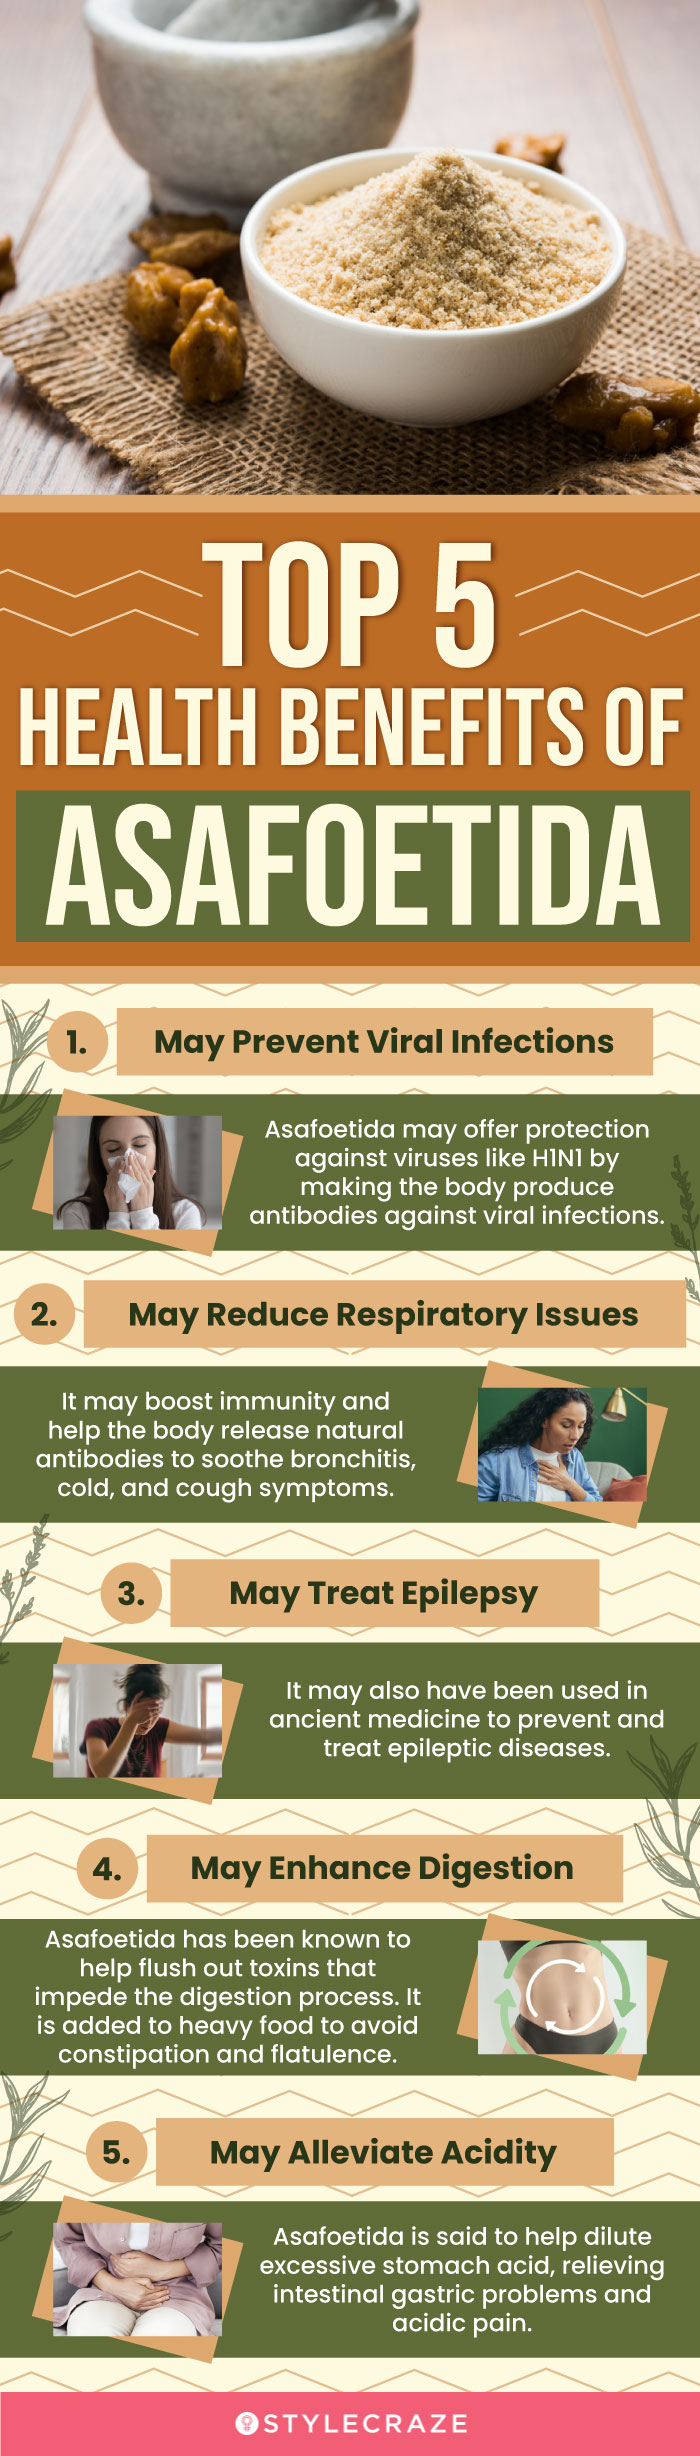 top 5 health benefits of asafoetida (infographic)